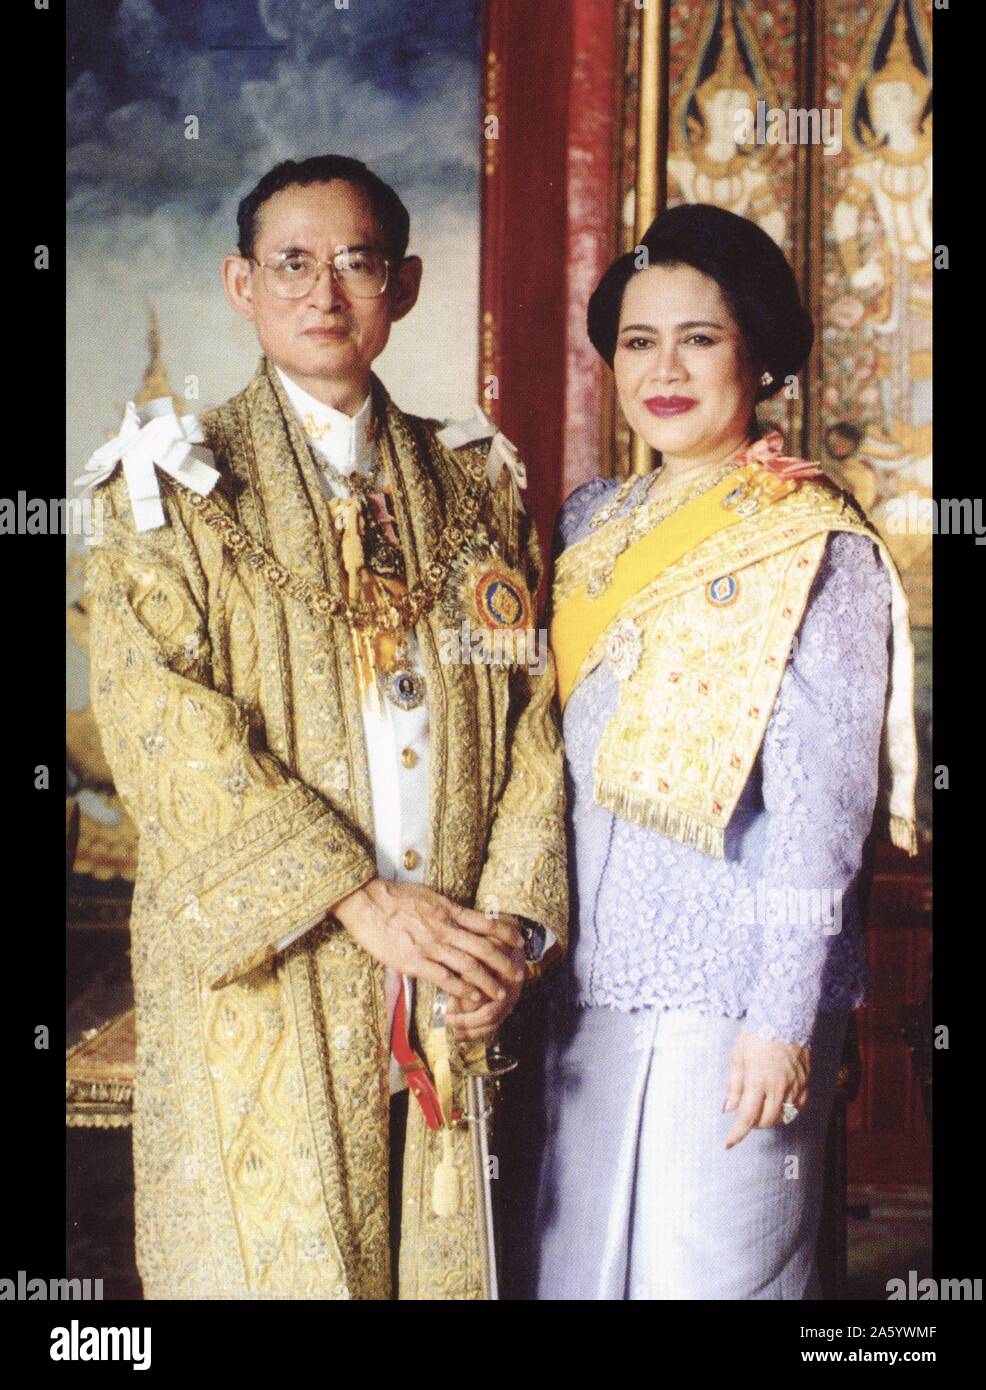 Bhumibol Adulyadej (né en 1927), Roi de Thaïlande. Il est également connu sous le nom de Rama IX, comme il est le neuvième monarque de la dynastie Chakri. Ayant régné depuis le 9 juin 1946 avec son épouse la reine Sirikit. 1996 Banque D'Images